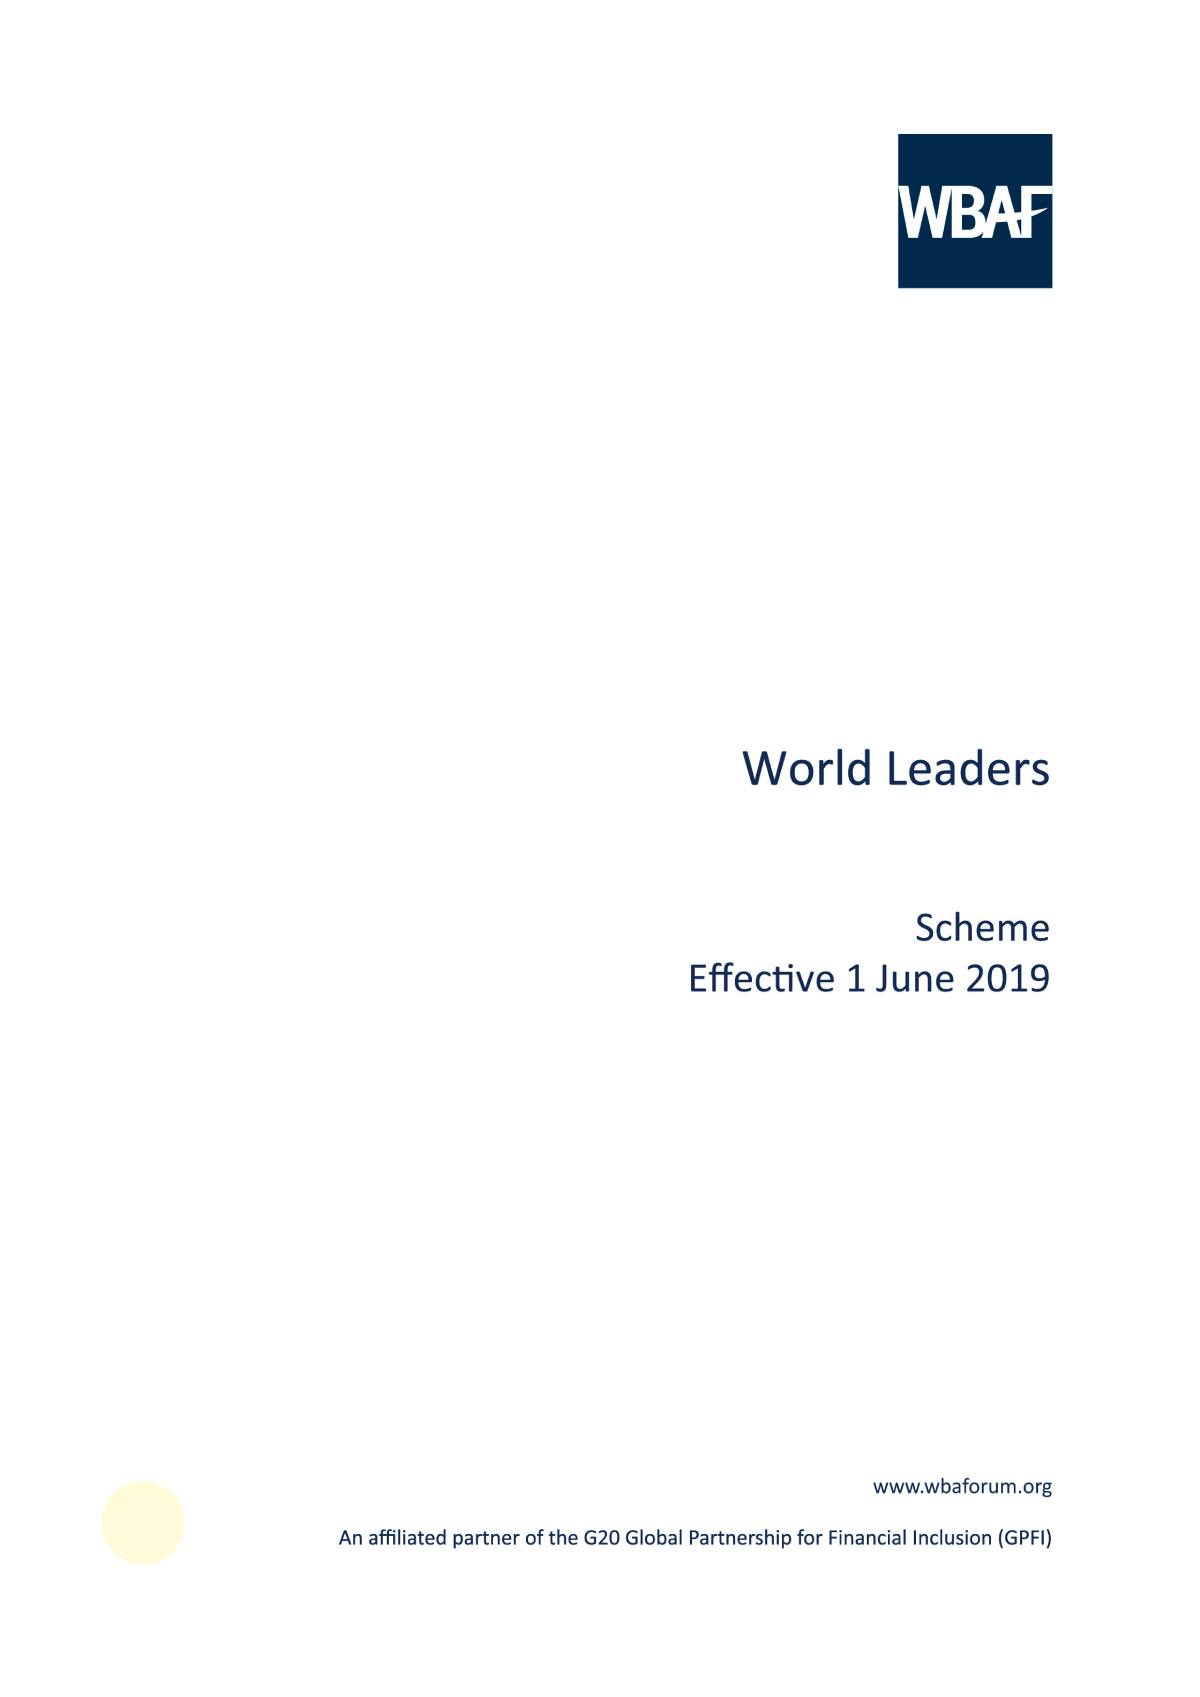 World Leaders - Scheme